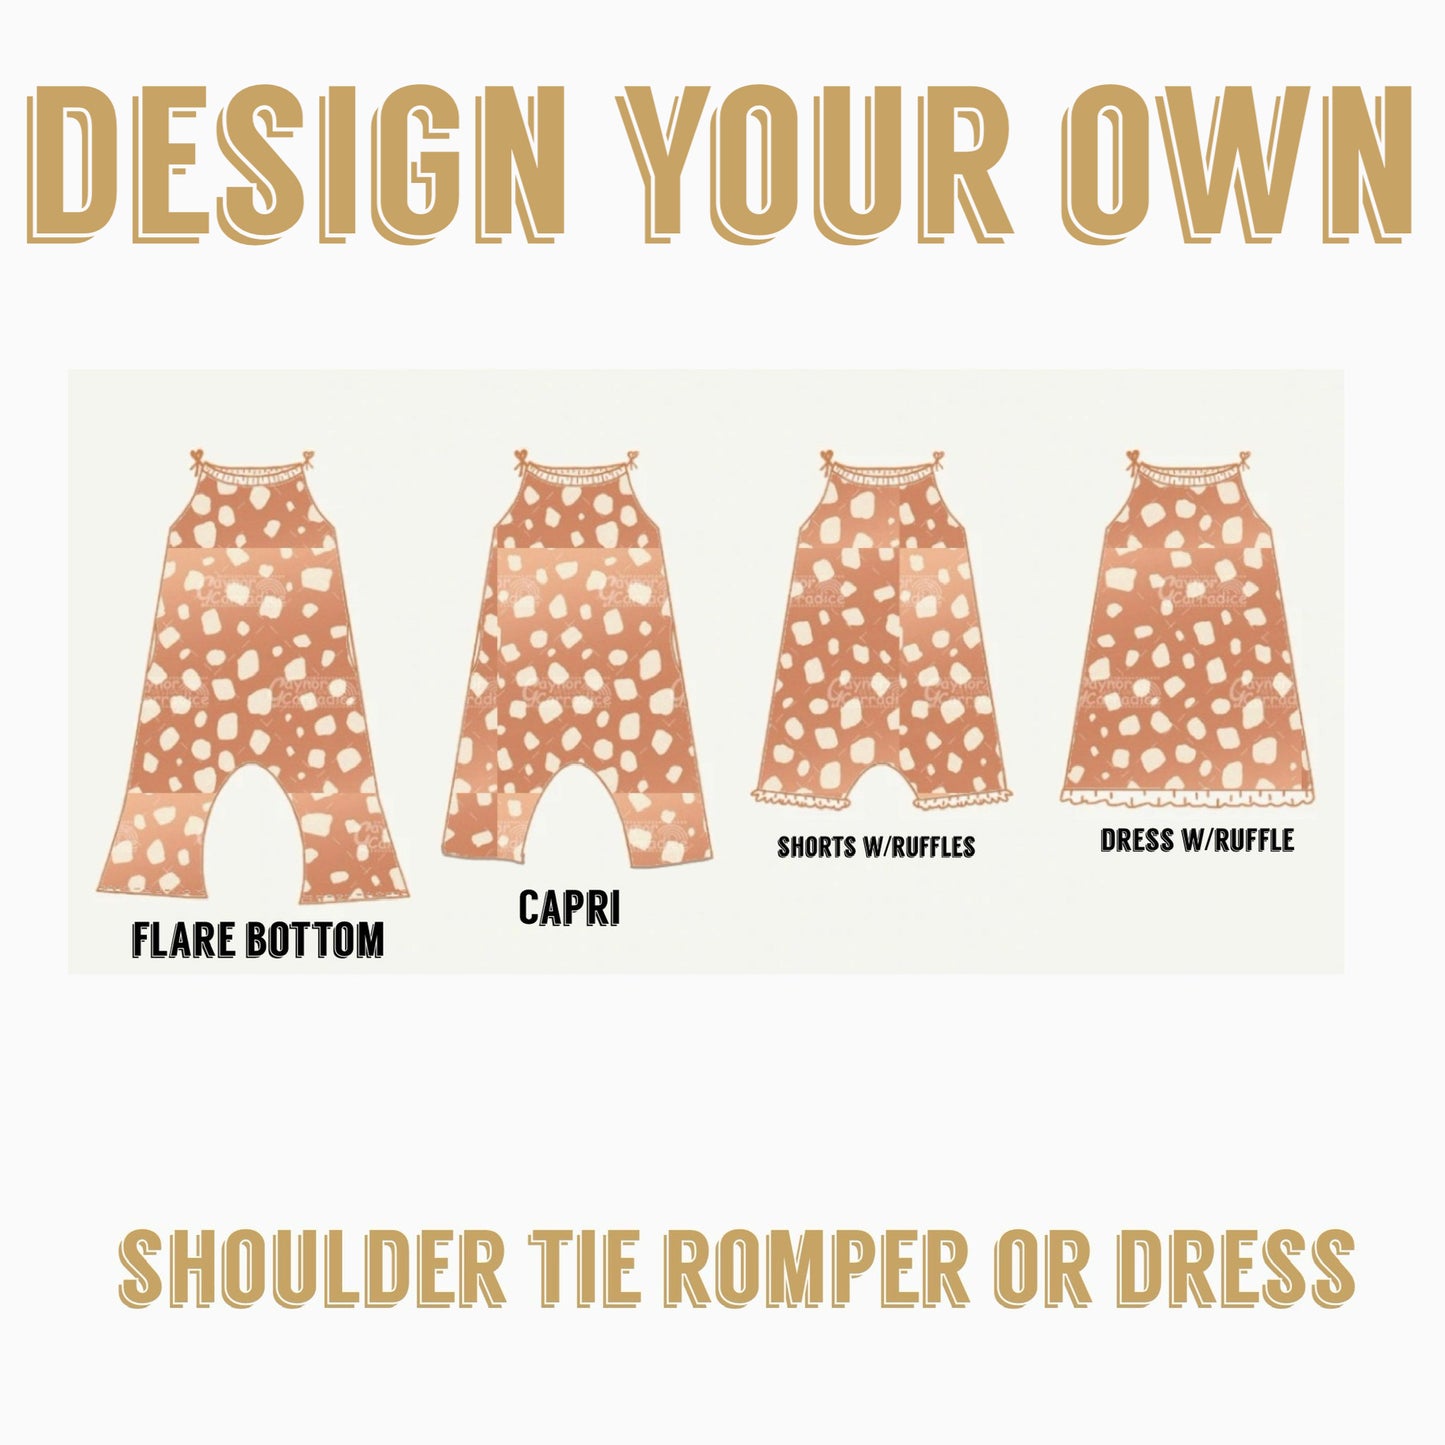 Design your own | Shoulder tie romper or dress